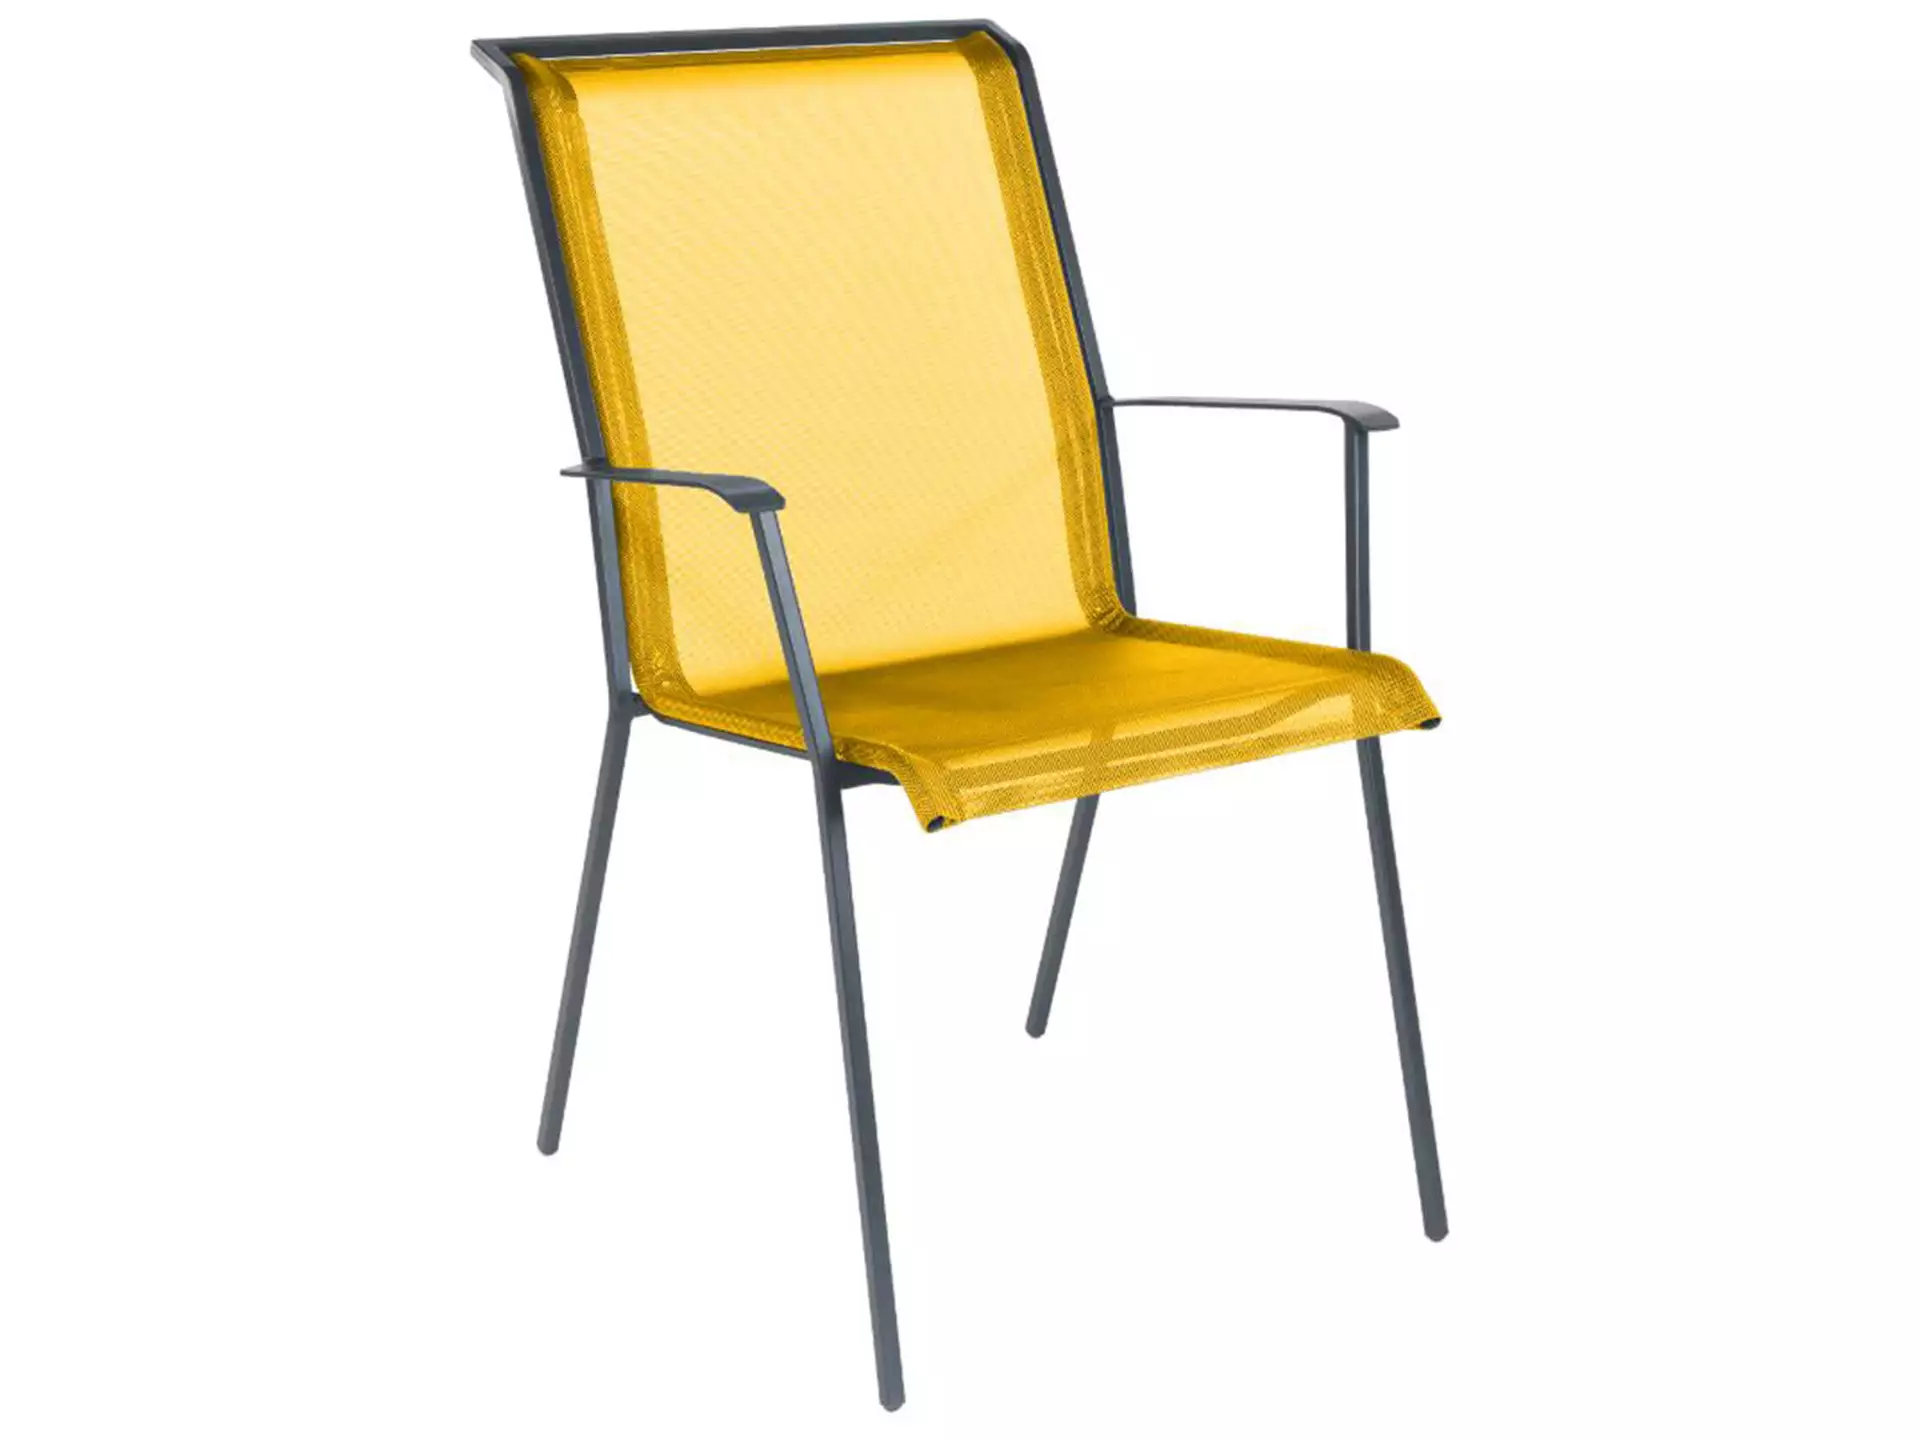 Matten-Sessel Chur Schaffner / Farbe: Gelb